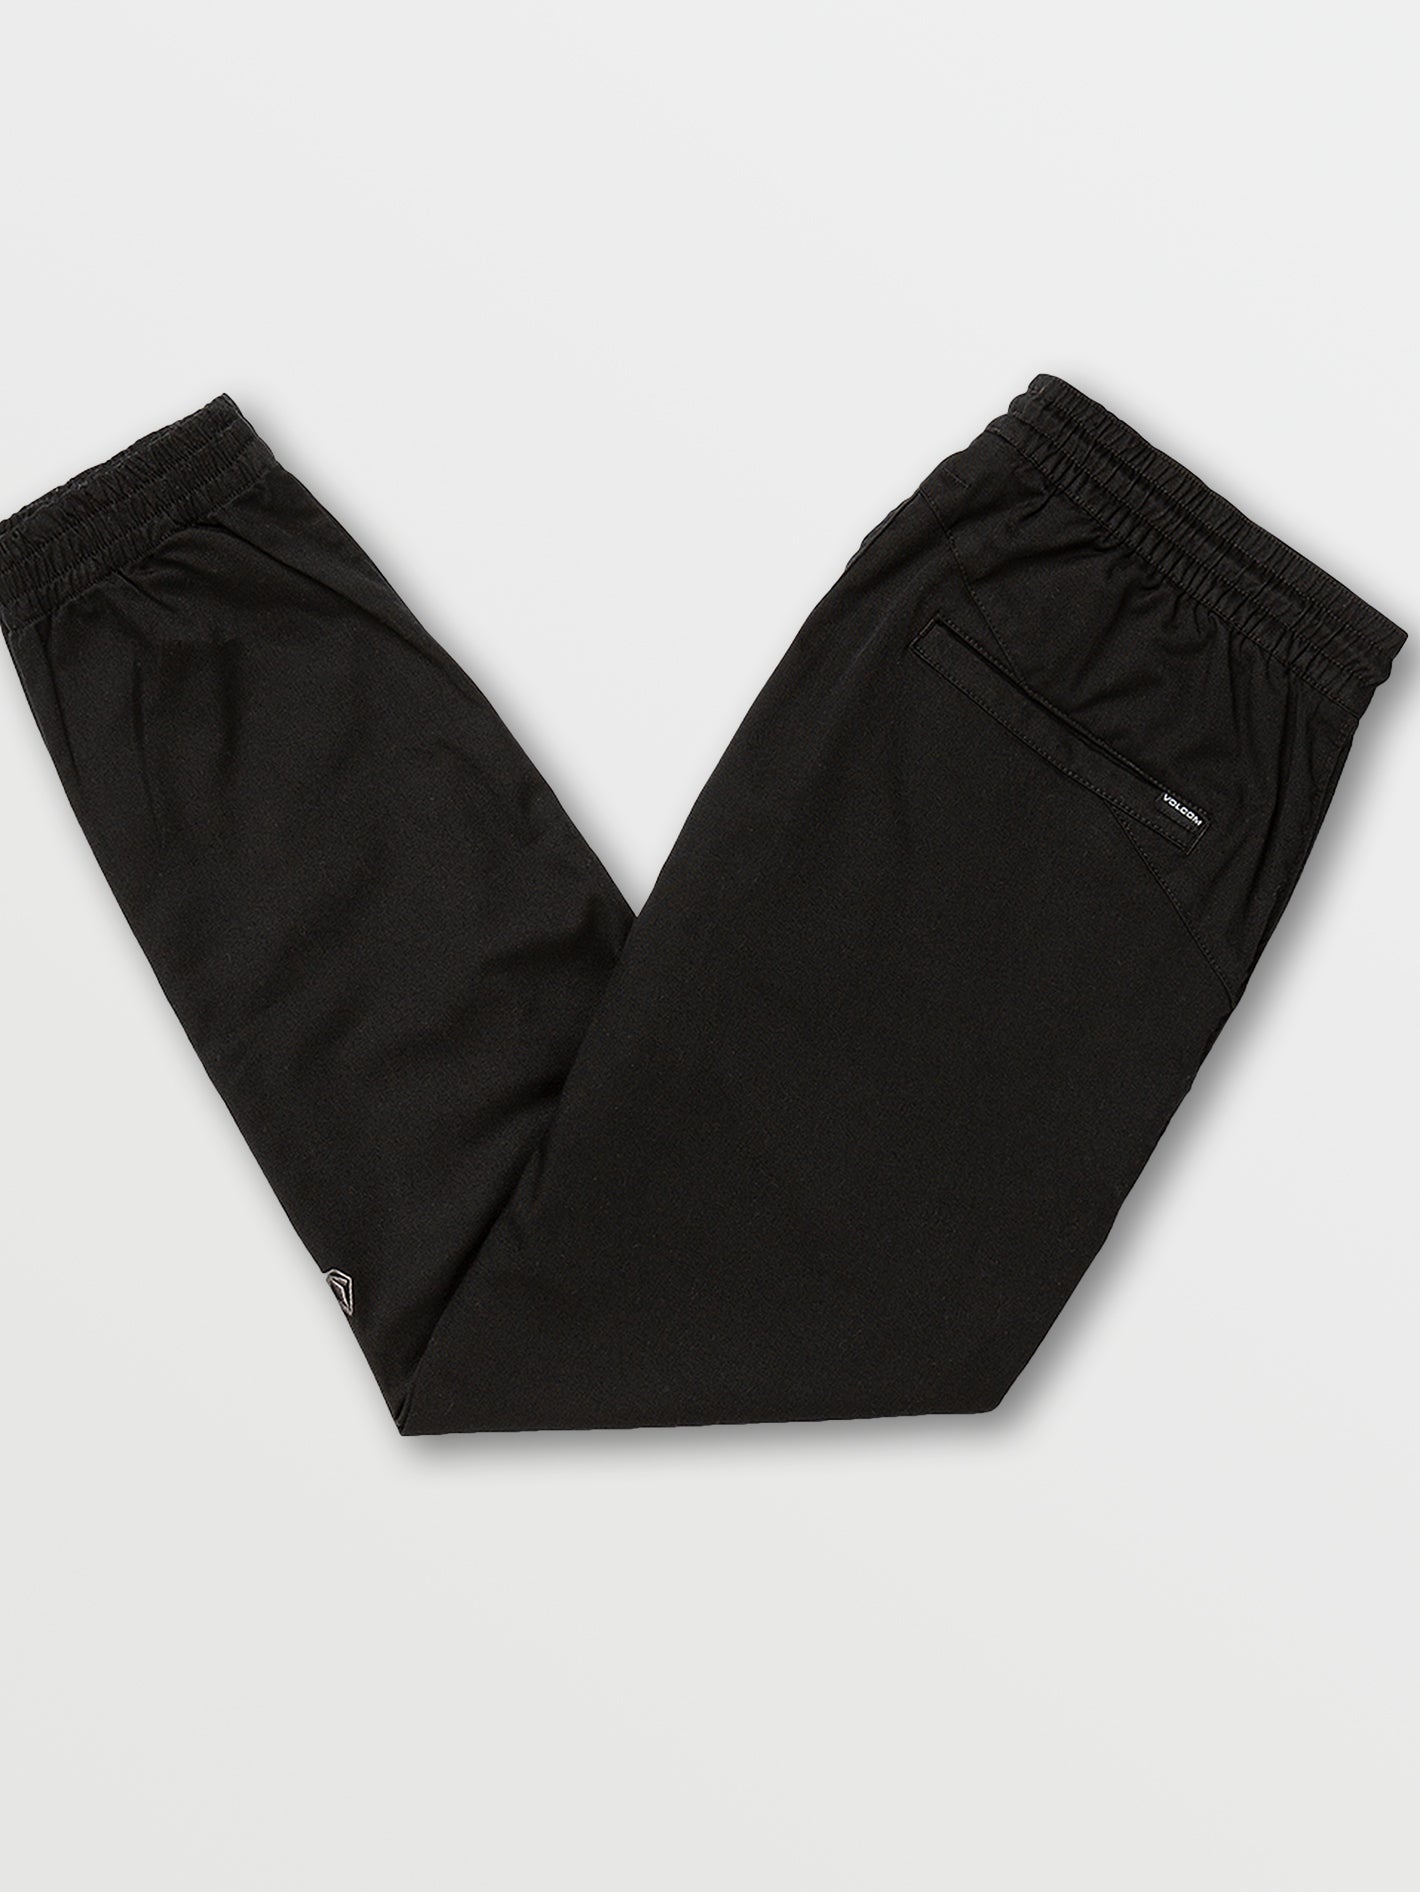 Buy Girls Black Solid Regular Fit Track Pants Online - 707524